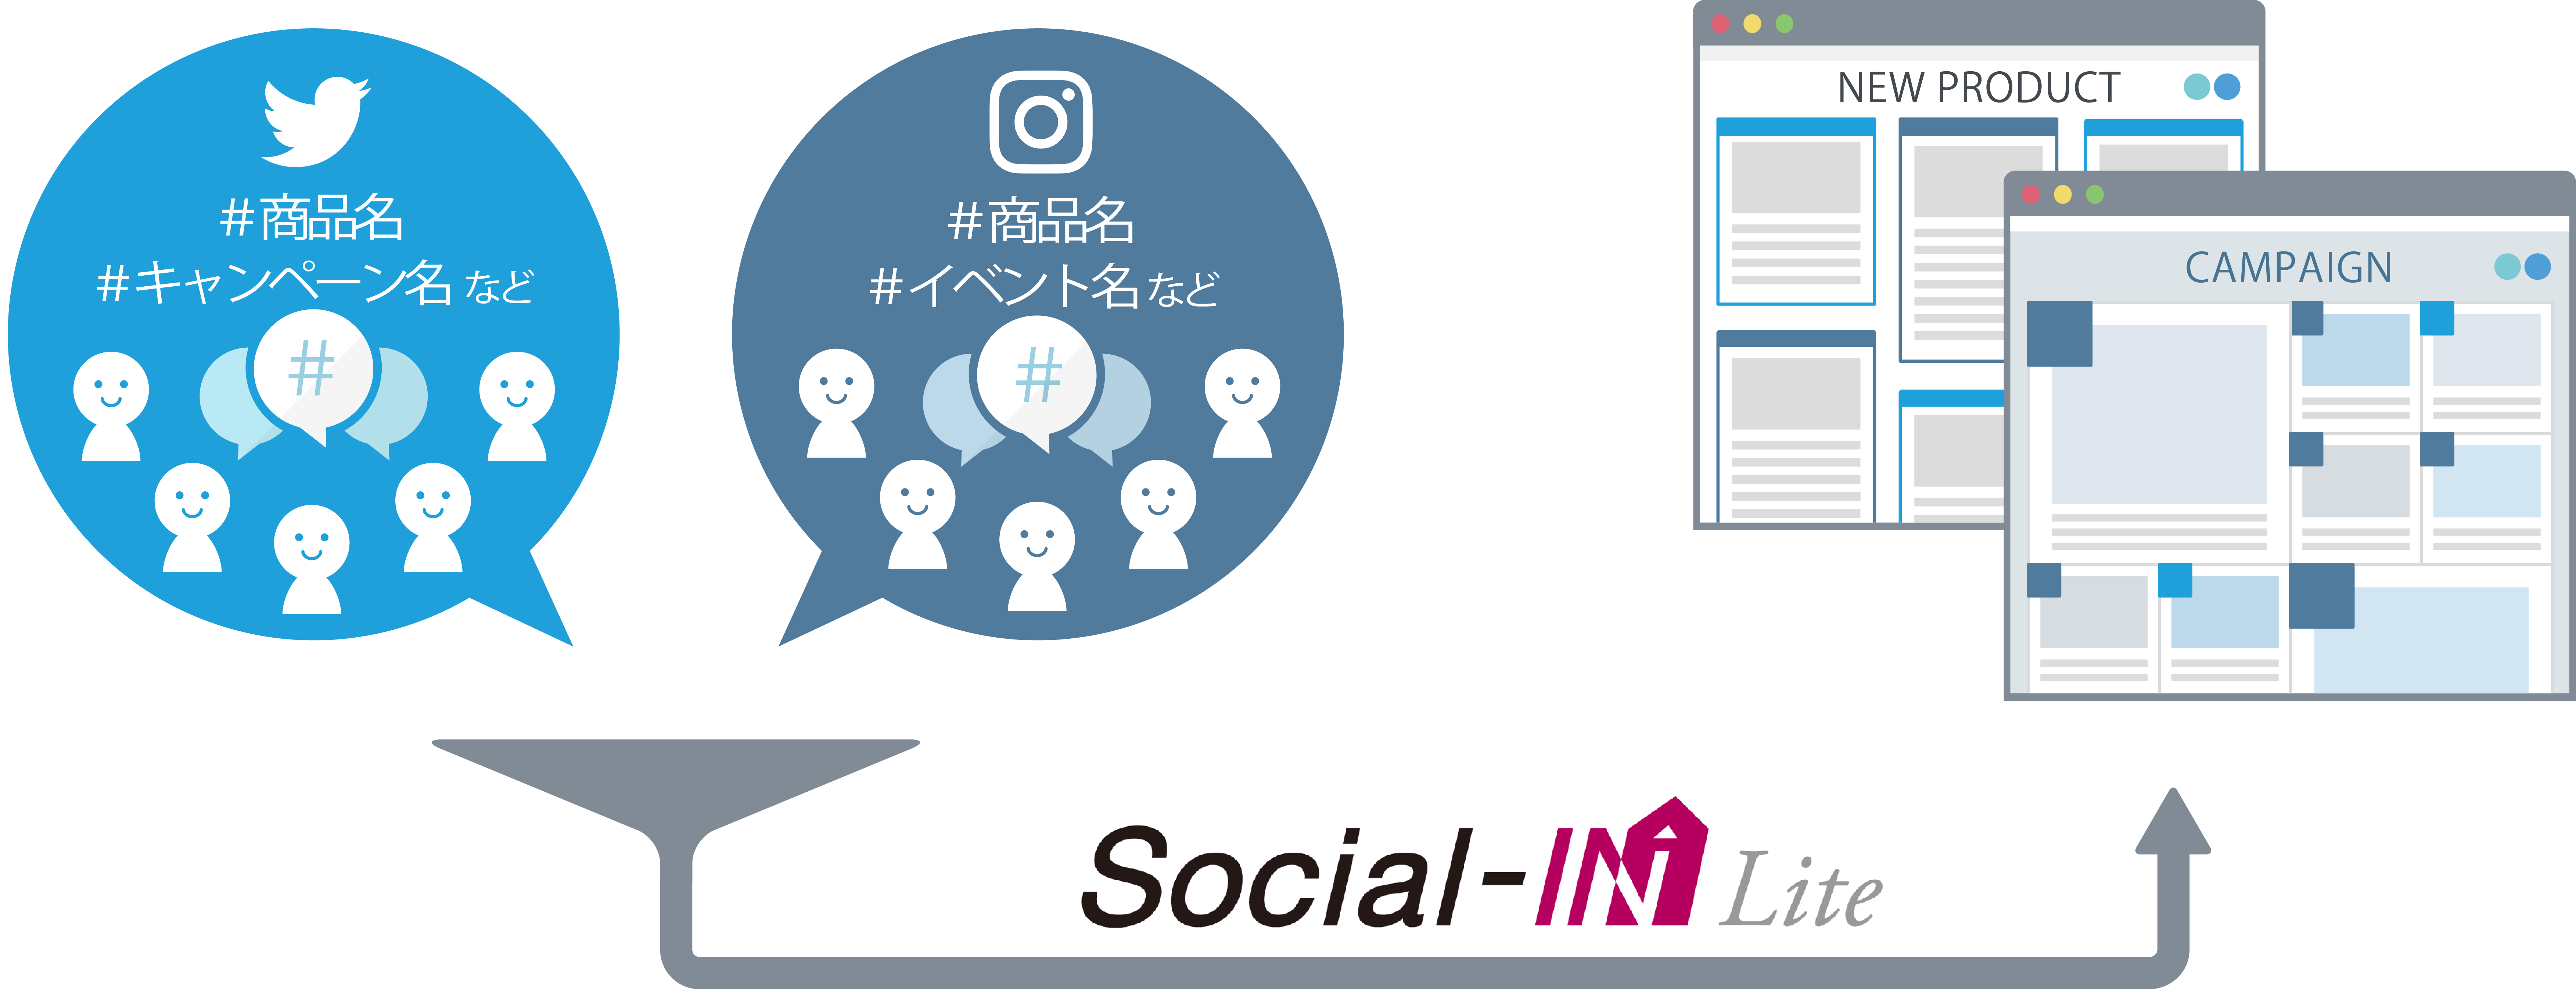 Social-INLite_image.png